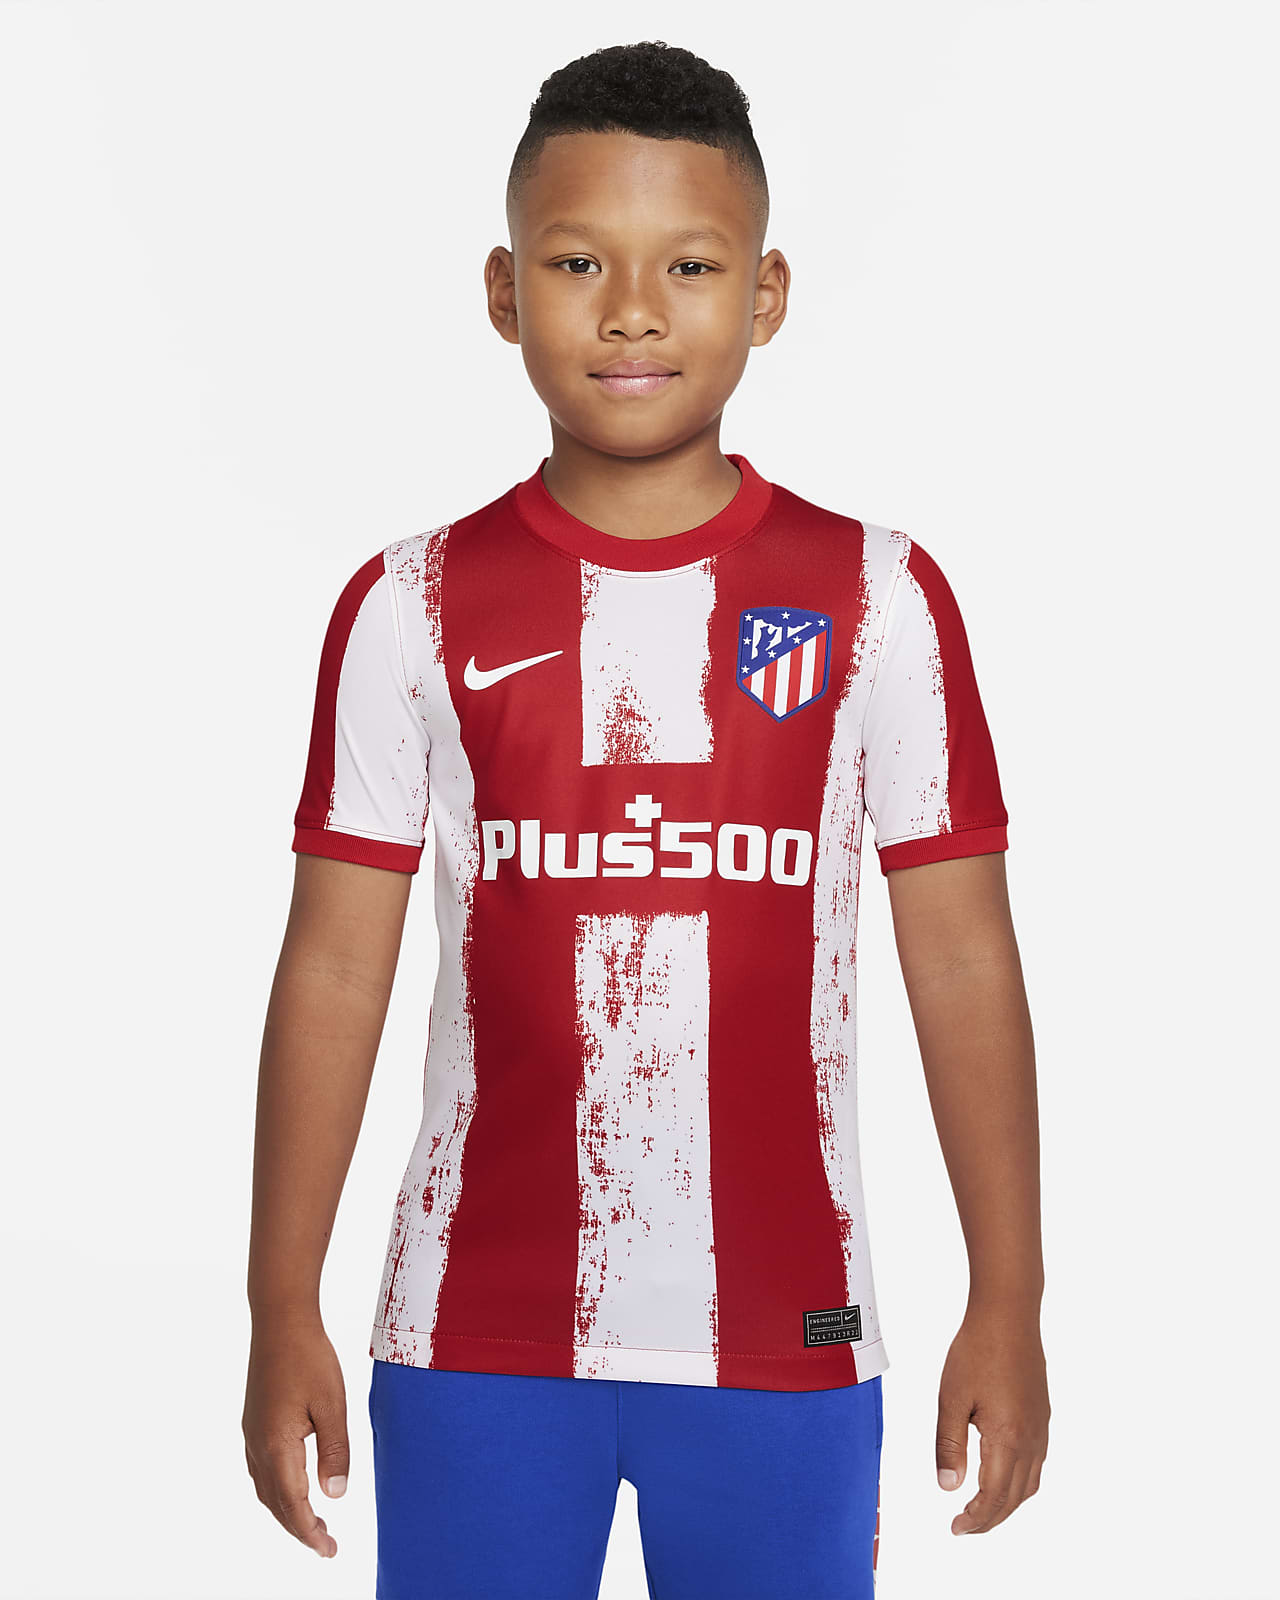 Primera equipación Stadium Atlético de Madrid 2021/22 Camiseta de